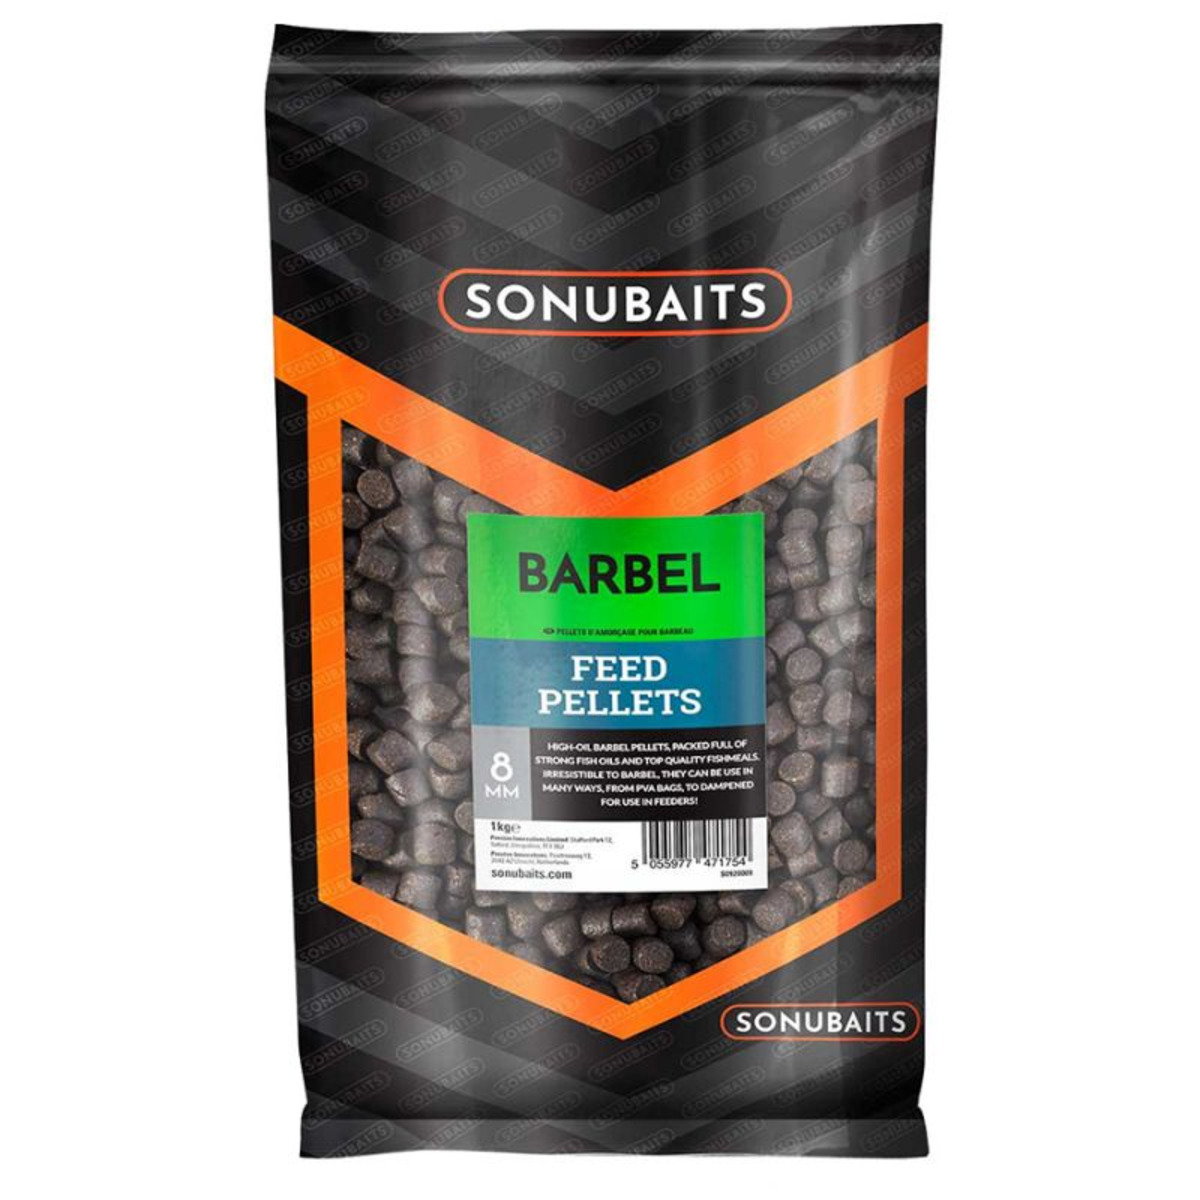 Sonubaits Barbel Feed Pellets - 8 mm - 1 kg